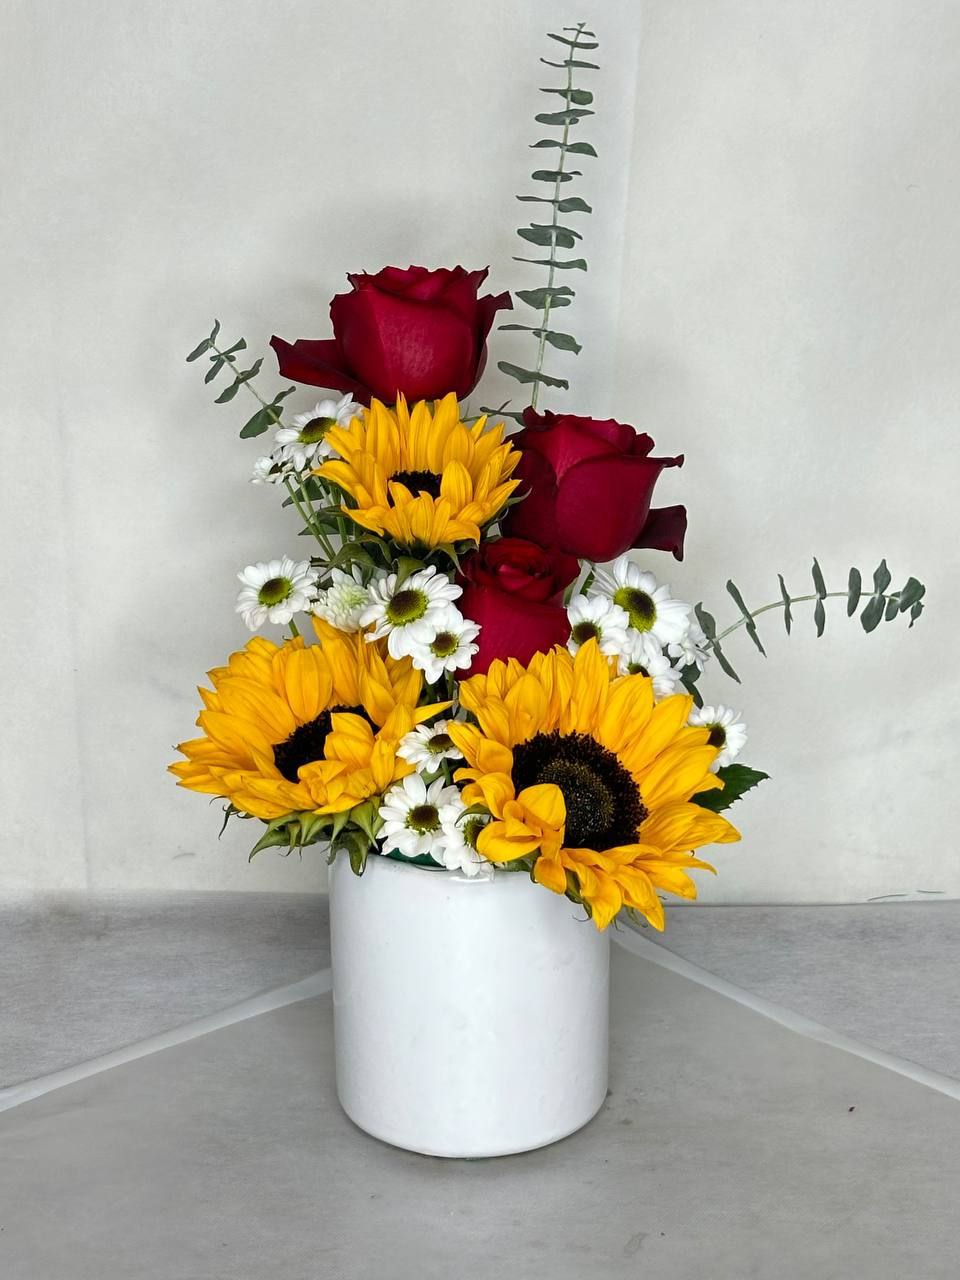 سفارش اینترنتی و خرید آنلاین باکس گل مناسبتی طرح افروز از اطلس گل شیراز متنوع ترین گلفروشی آنلاین کشور.